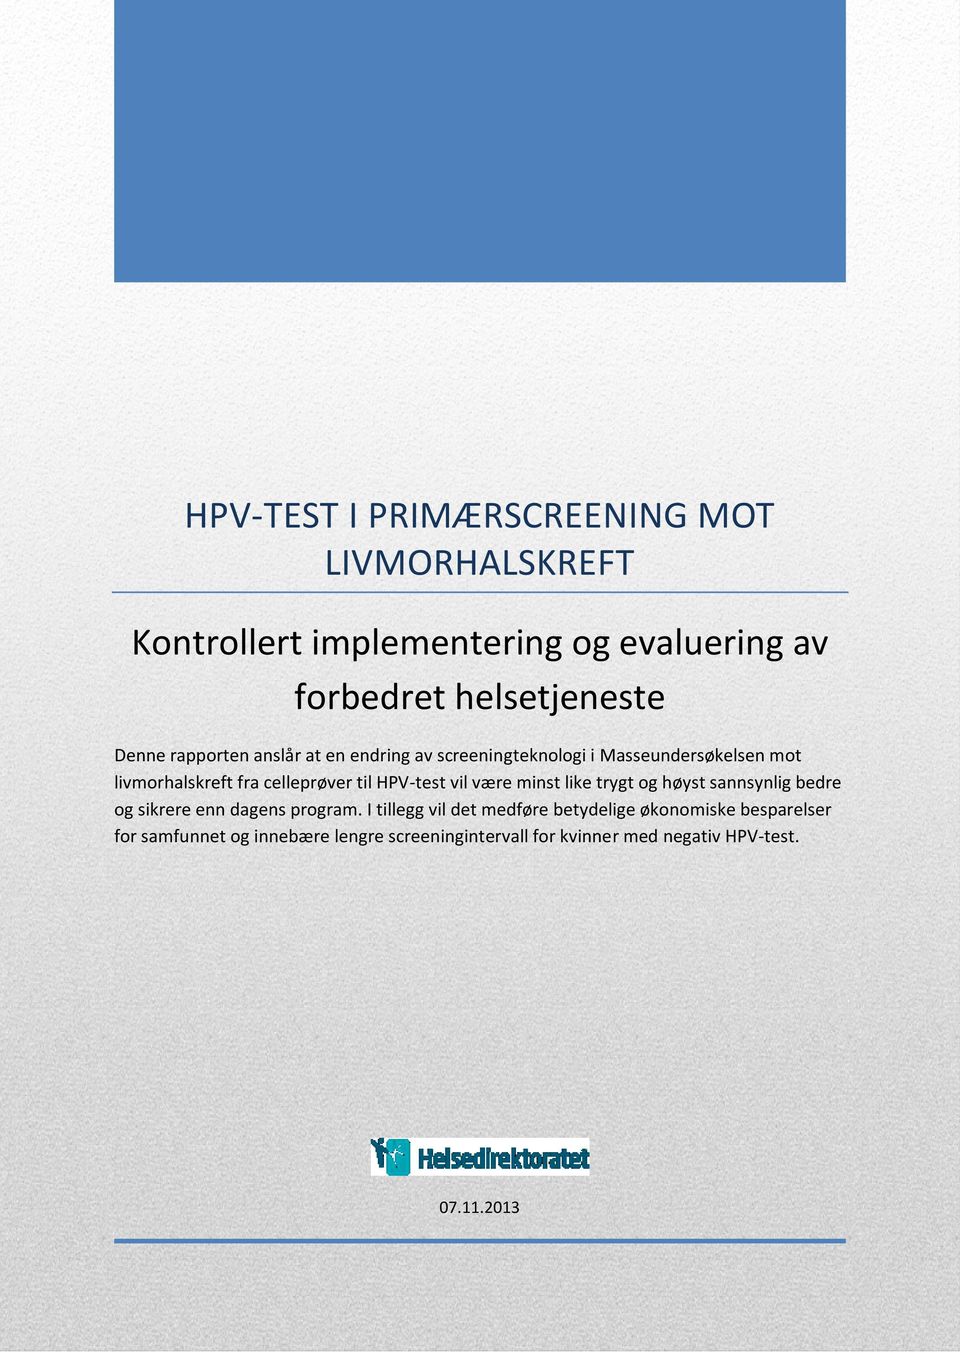 HPV-test vil være minst like trygt og høyst sannsynlig bedre og sikrere enn dagens program.